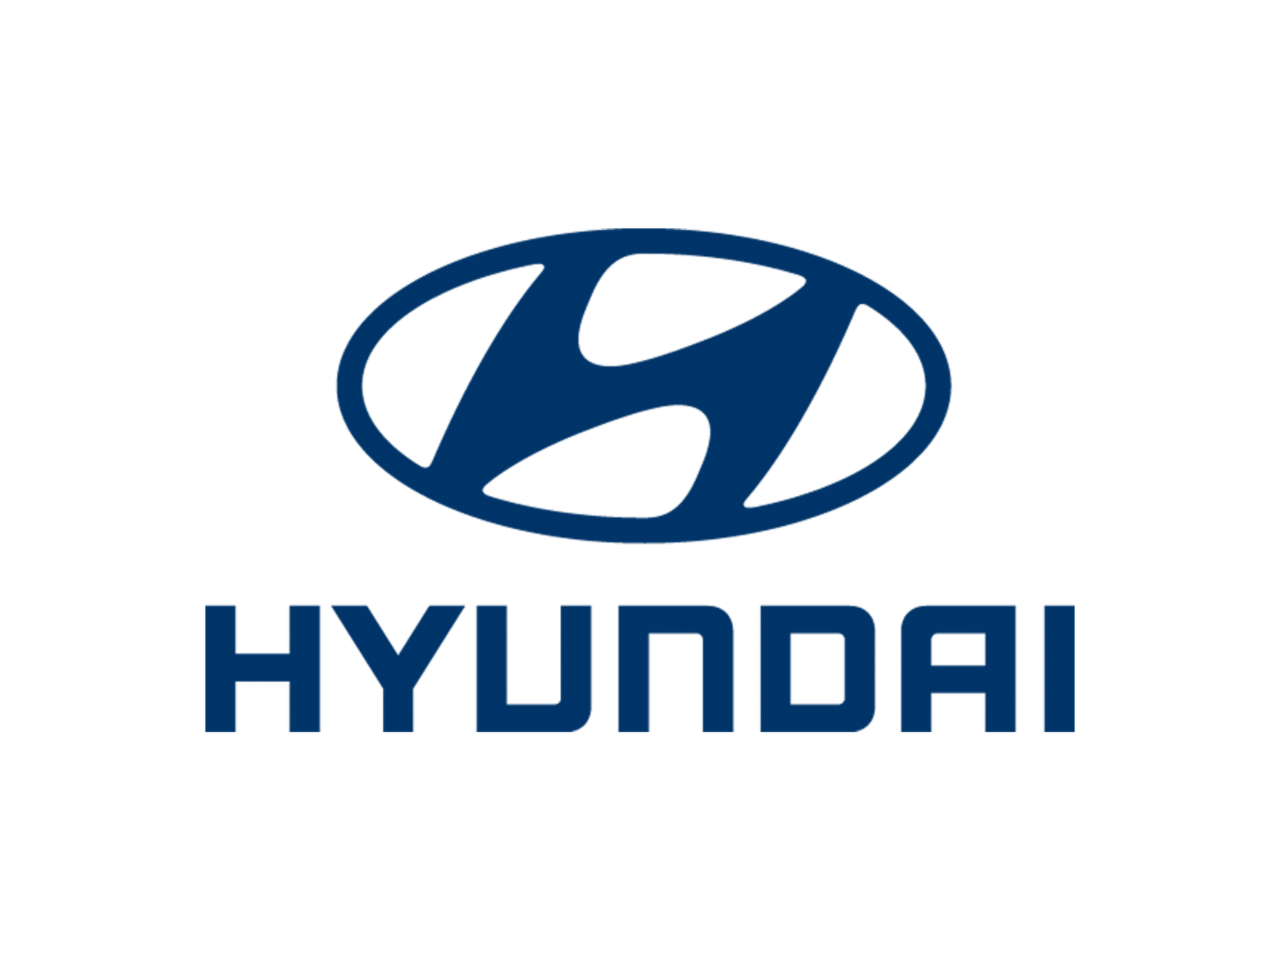 All Hyundai Models, Hyundai Motor UK